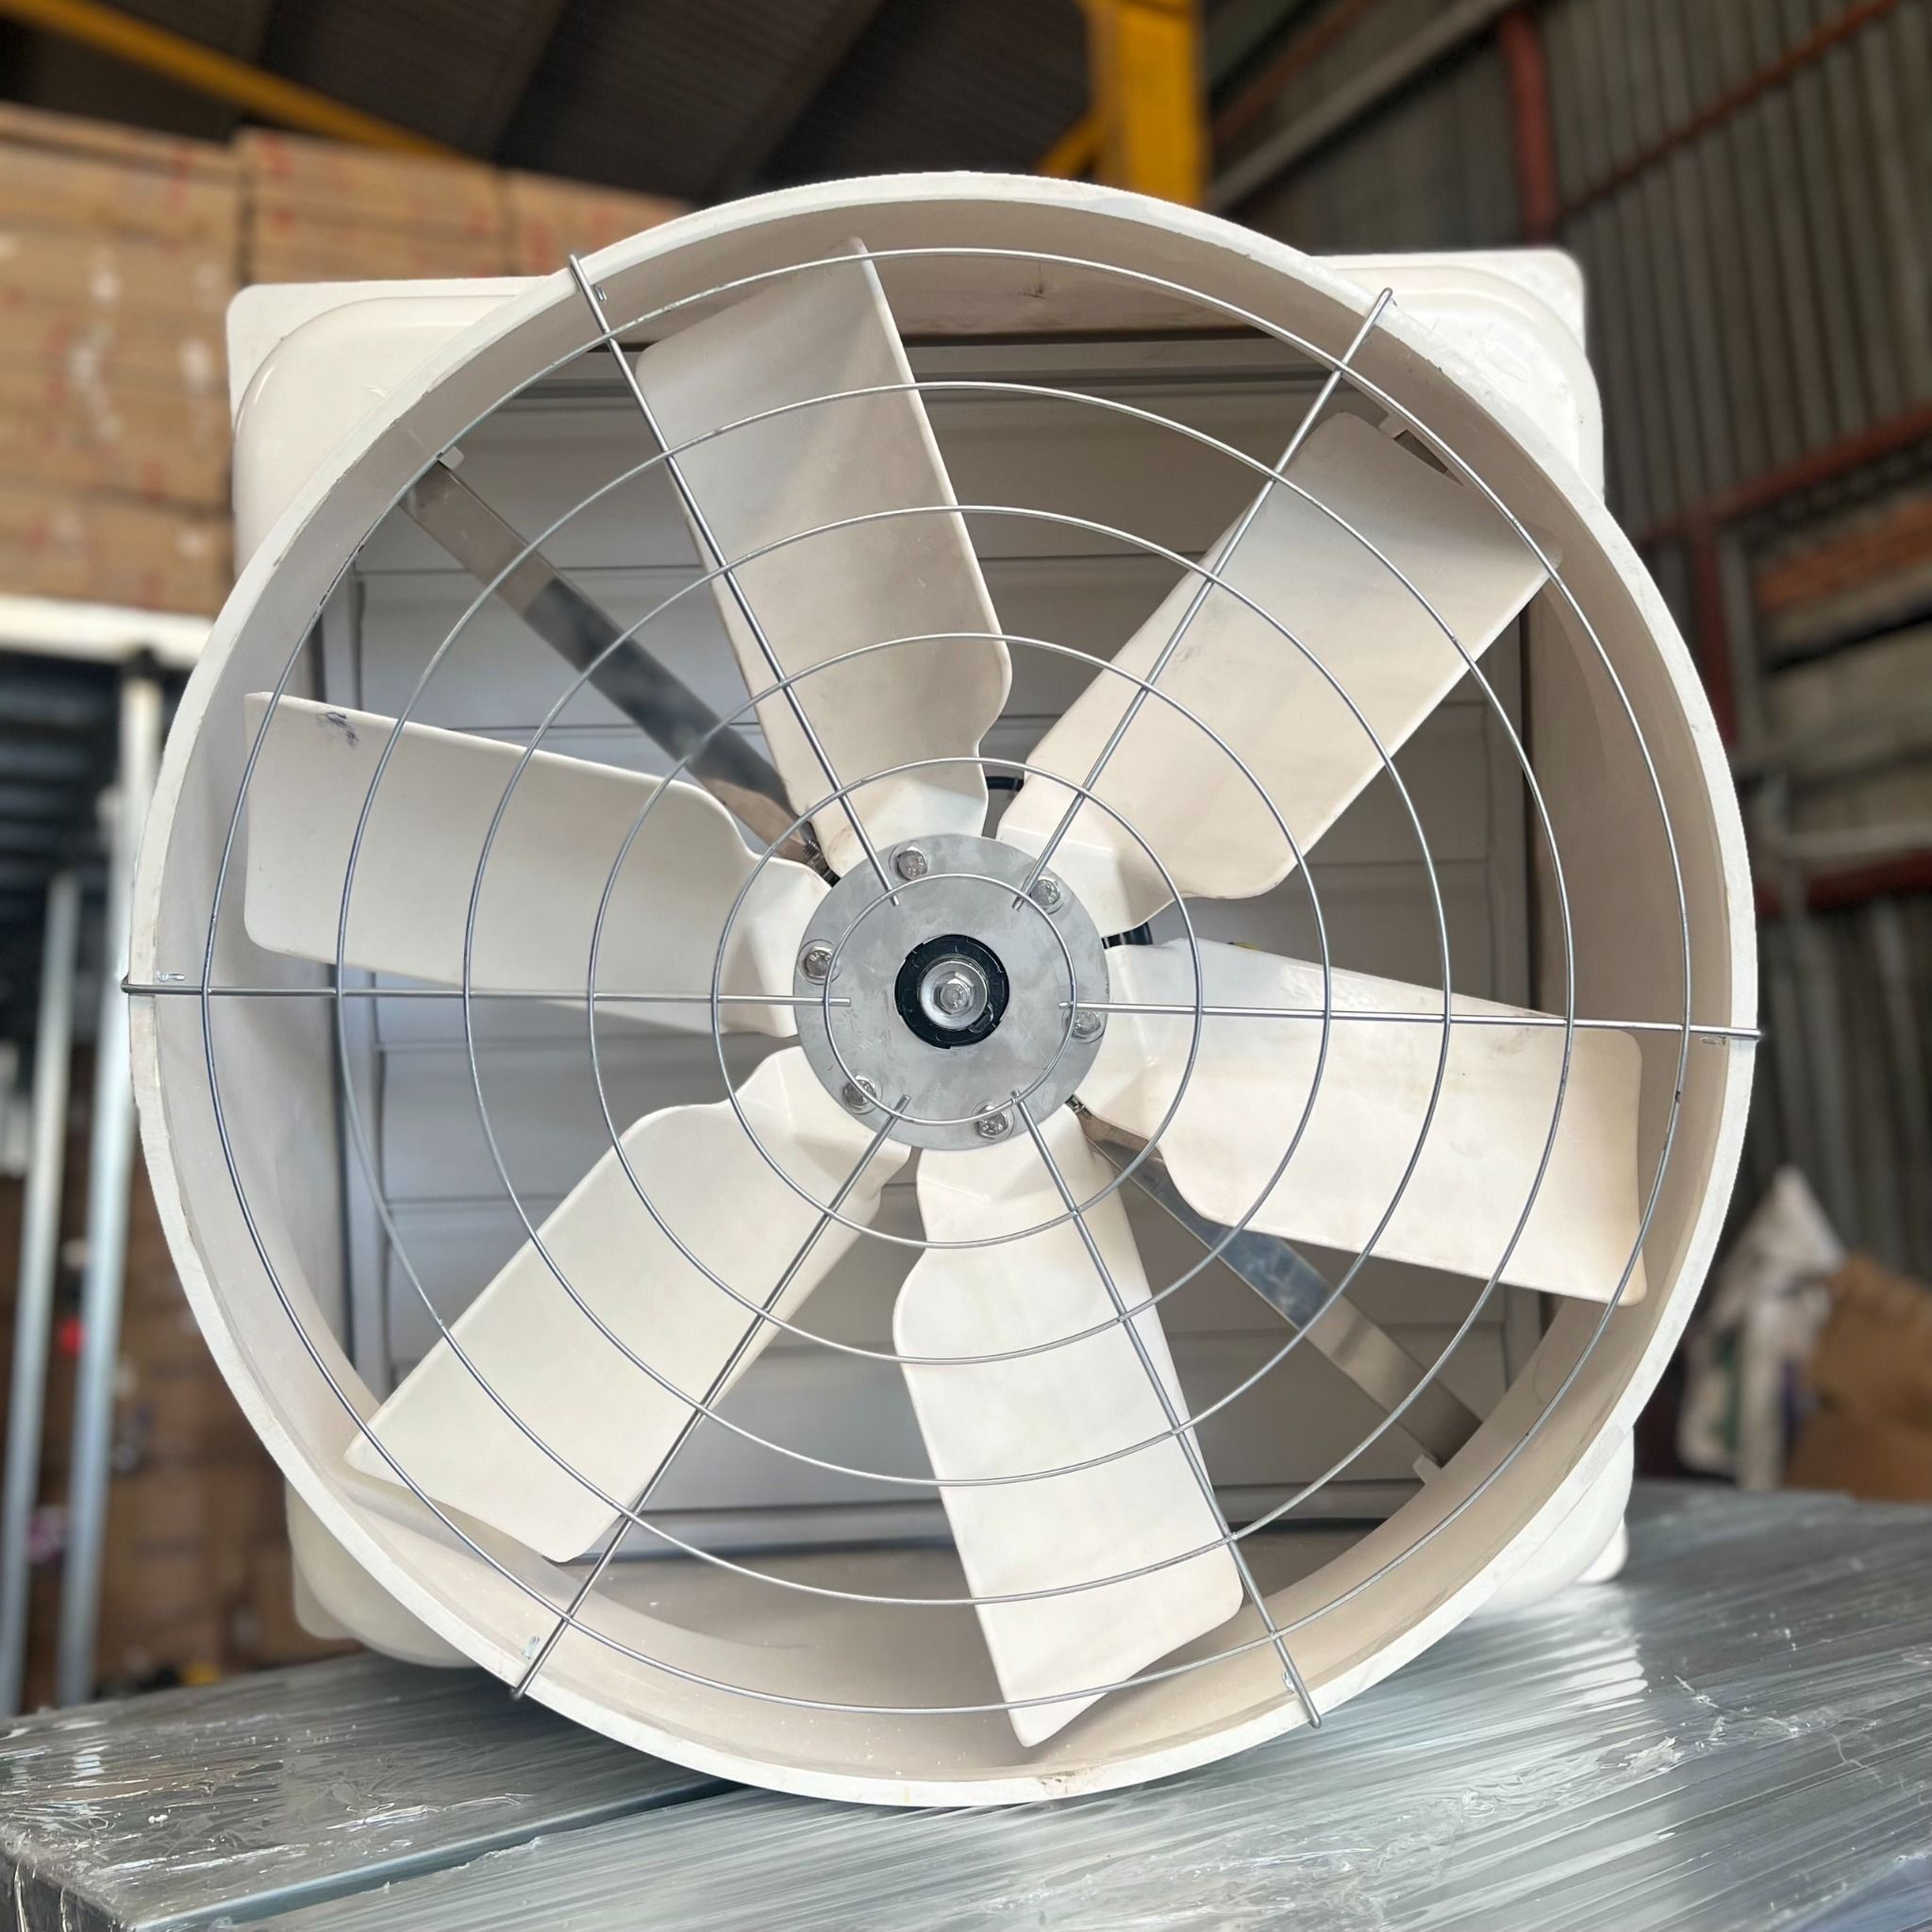 Quạt thông gió công nghiệp Composite Omysu BMF1260 - 0.75kw